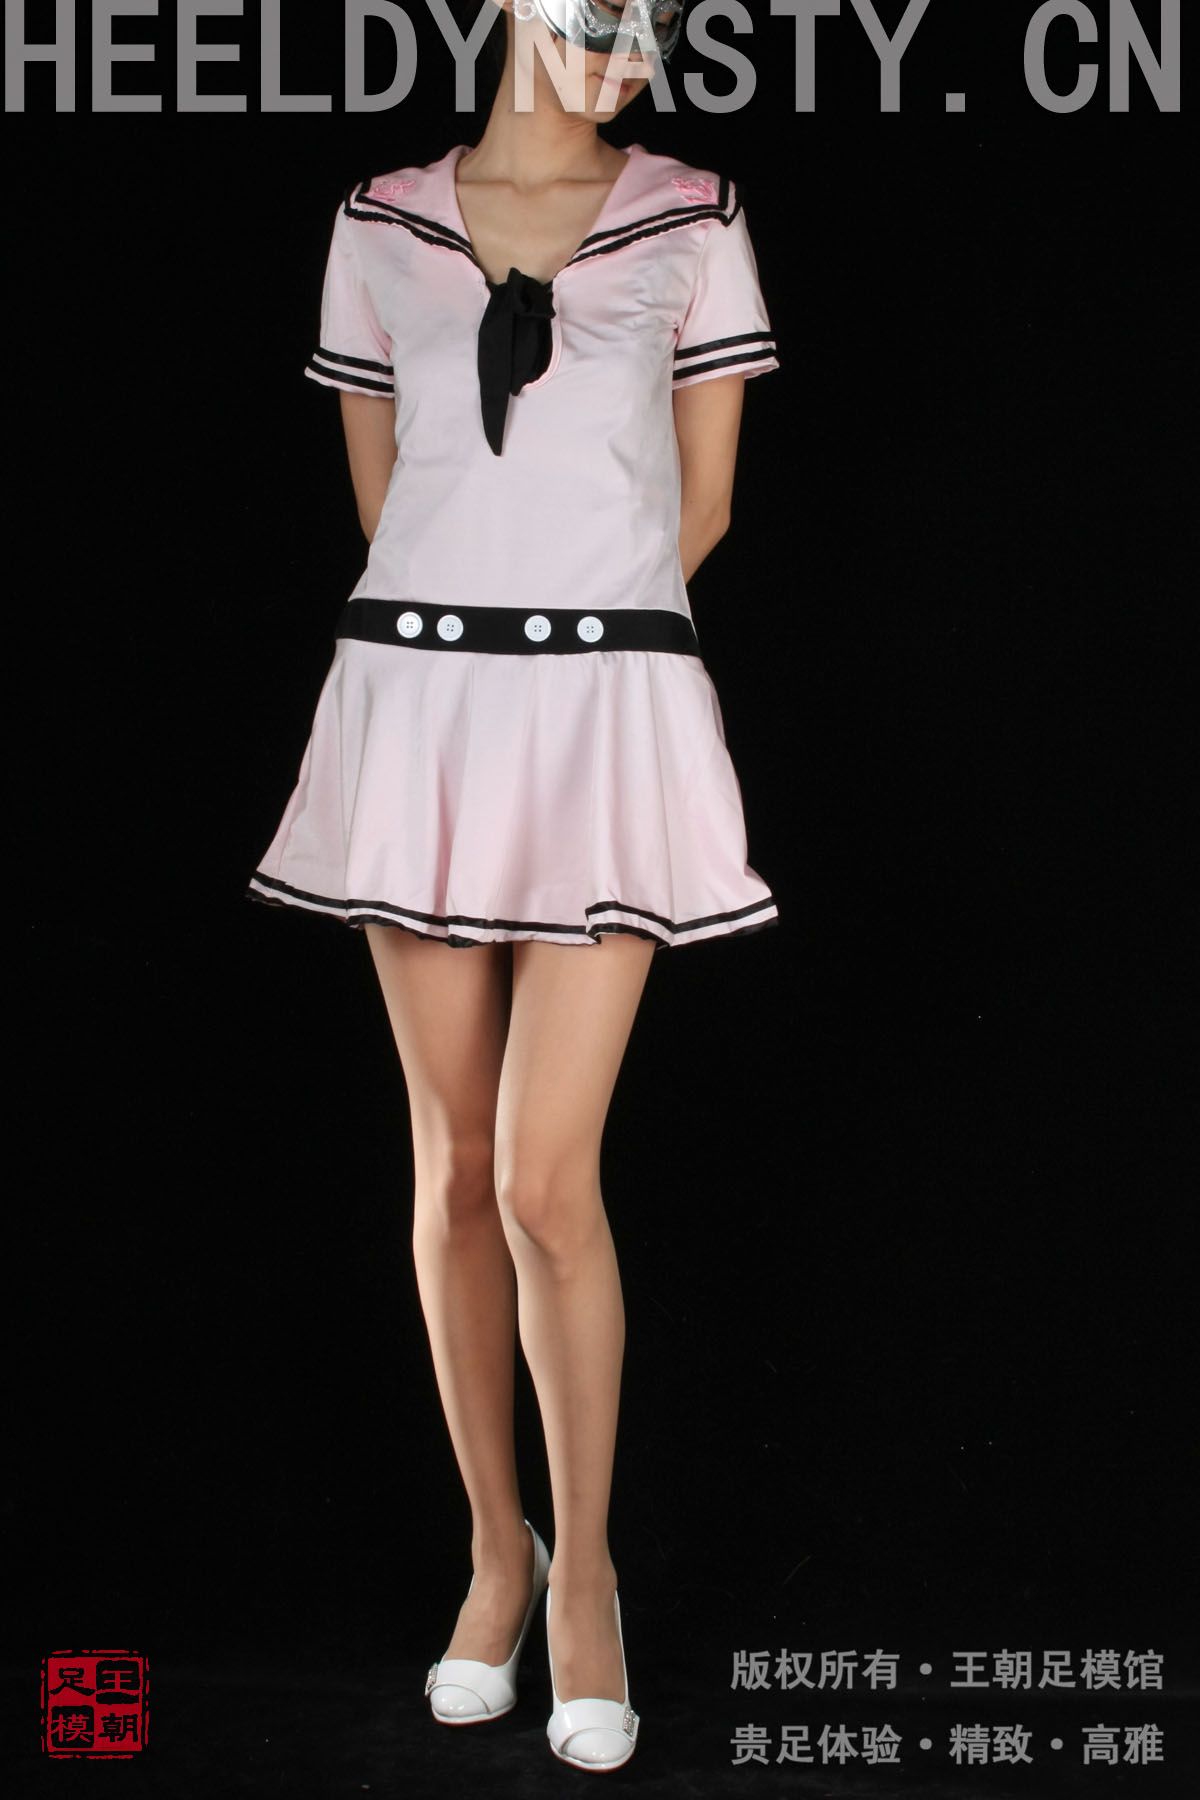 [王朝贵足丝袜] 2009-03-03 室内套图 布丁粉色水手制服短裙肉丝白色高跟系列B3